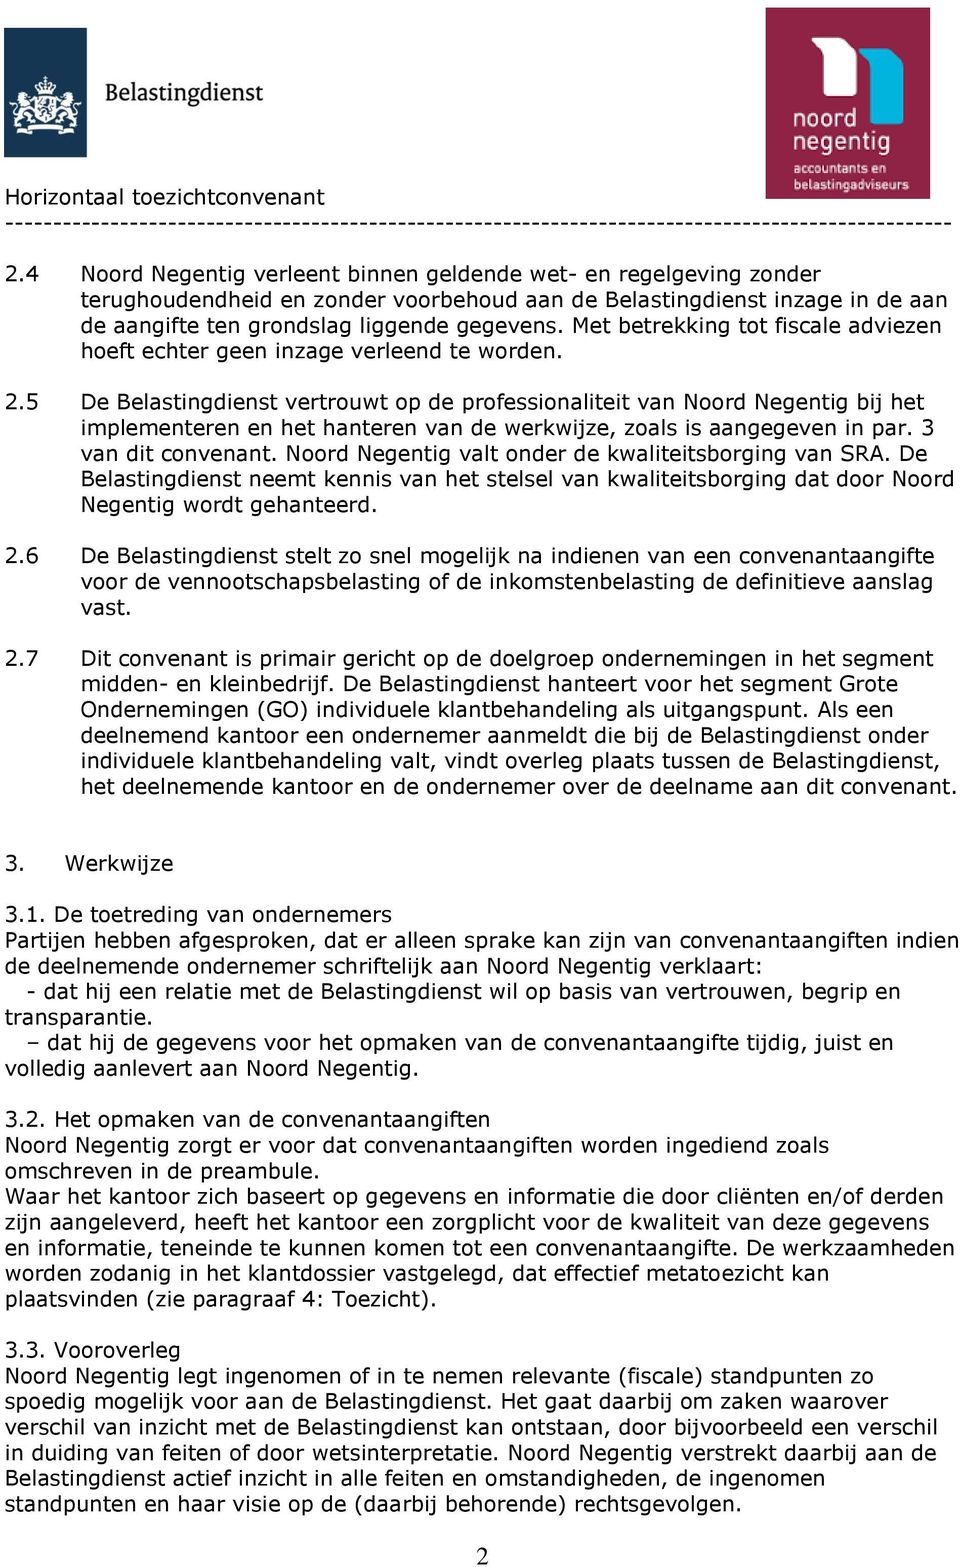 5 De Belastingdienst vertrouwt op de professionaliteit van Noord Negentig bij het implementeren en het hanteren van de werkwijze, zoals is aangegeven in par. 3 van dit convenant.